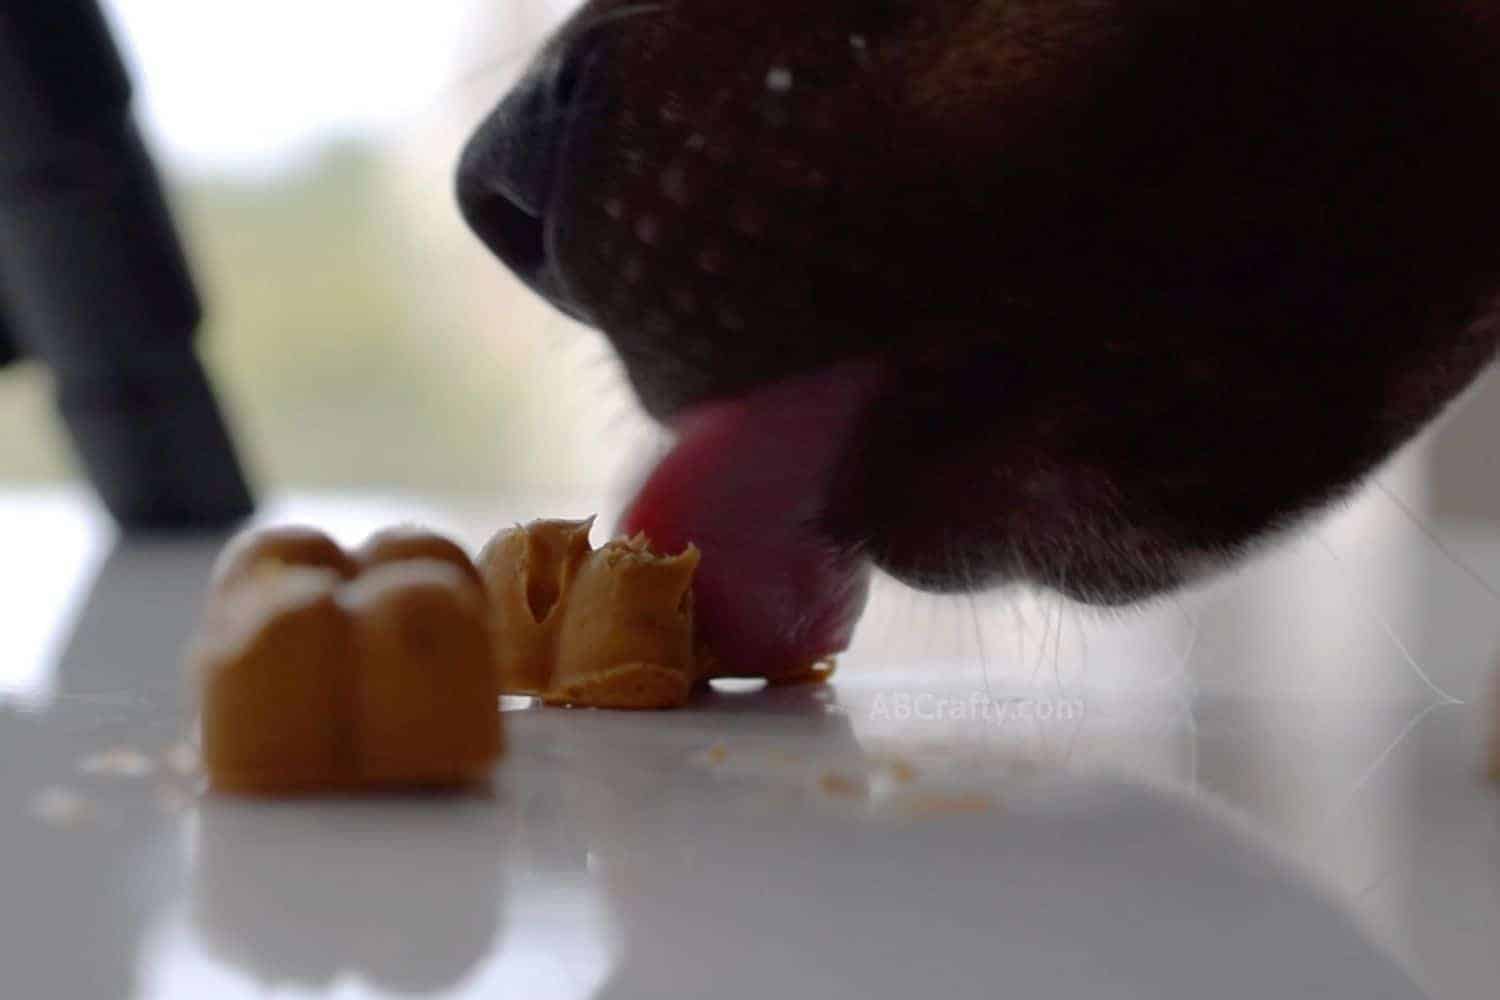 Dog stealing homemade peanut butter treats